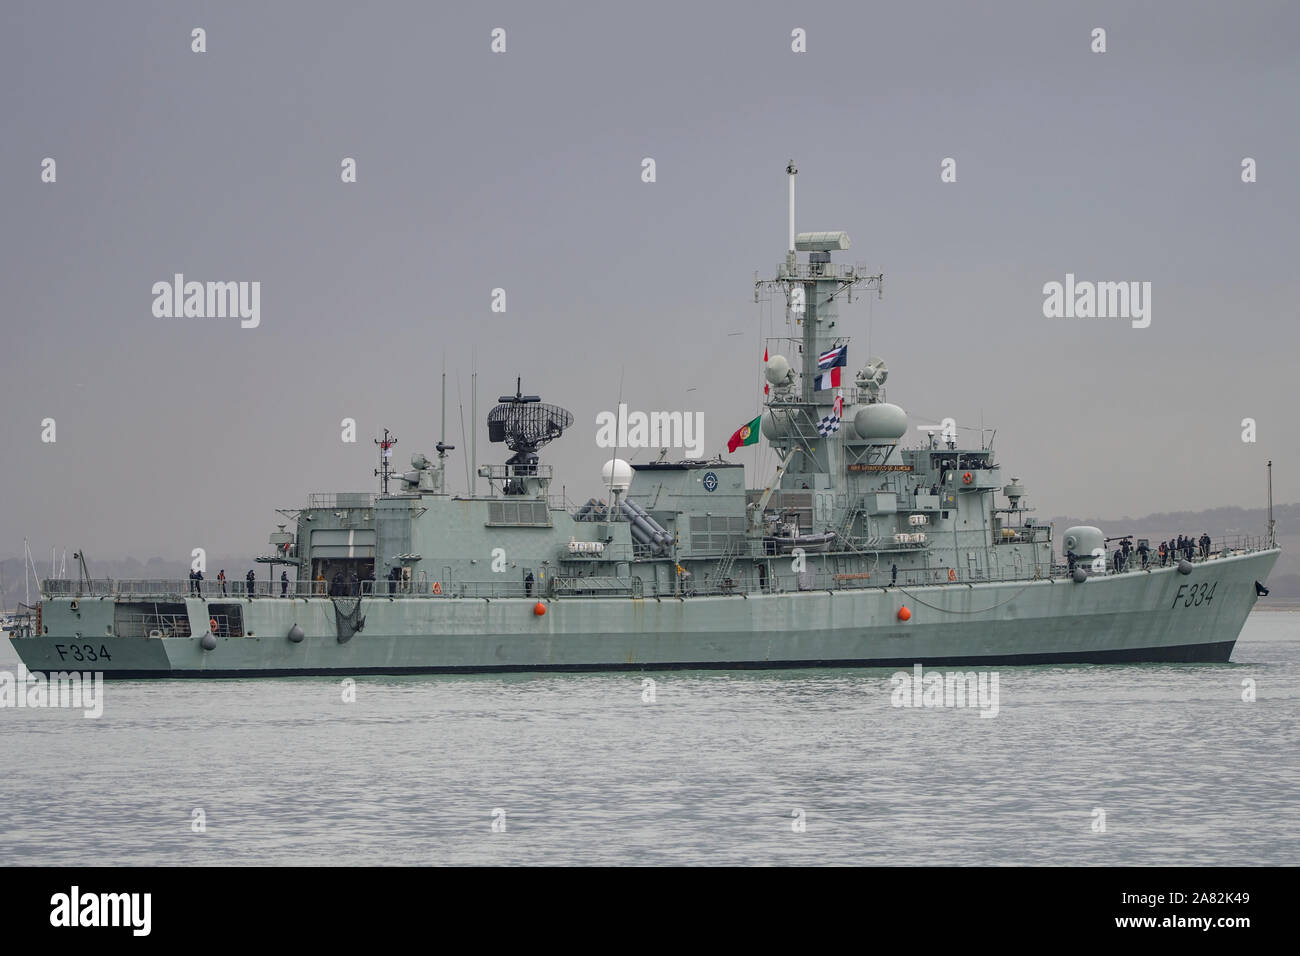 Die Portugiesische Marine Fregatte NFP D. Francisco de Almeida (F 334) bei der Ankunft in Portsmouth Harbour, UK am 4. November 2019 gesehen. Stockfoto